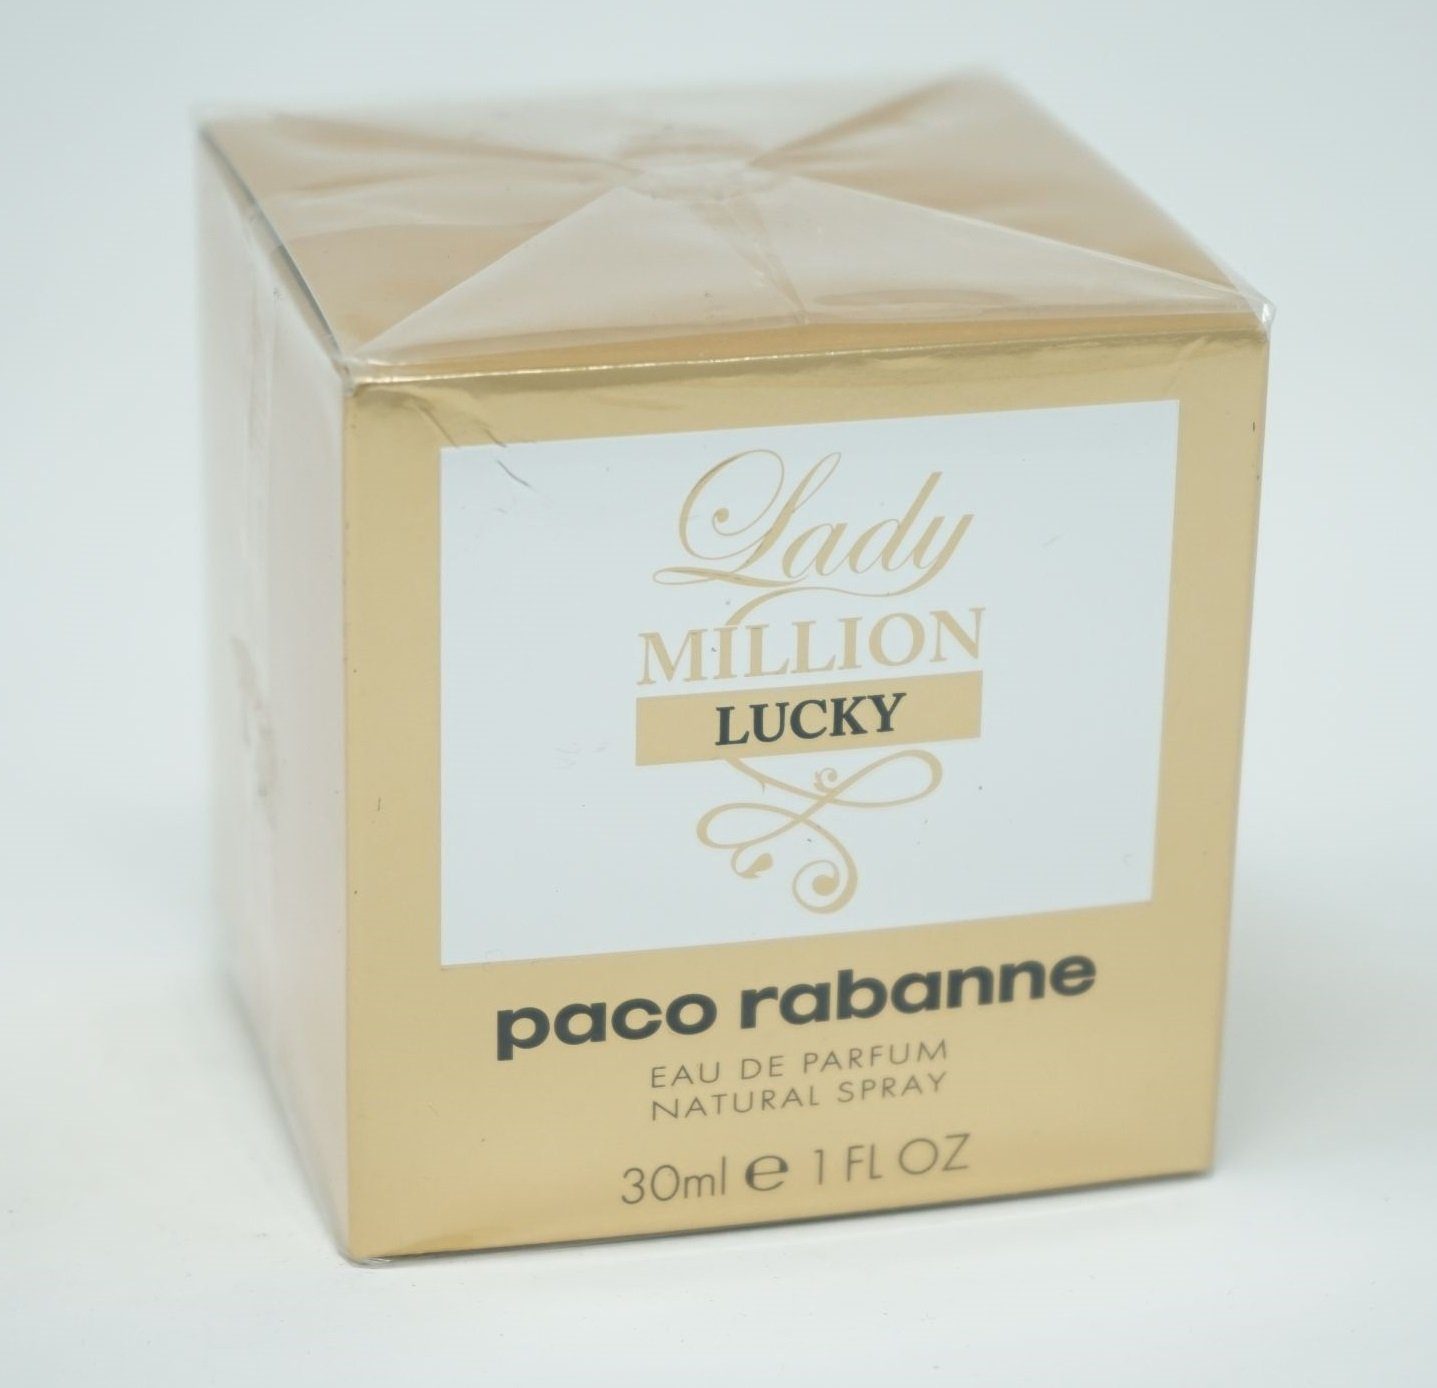 paco rabanne Eau de Parfum Paco Rabanne Lady Million Lucky Eau de Parfum Spray 30ml